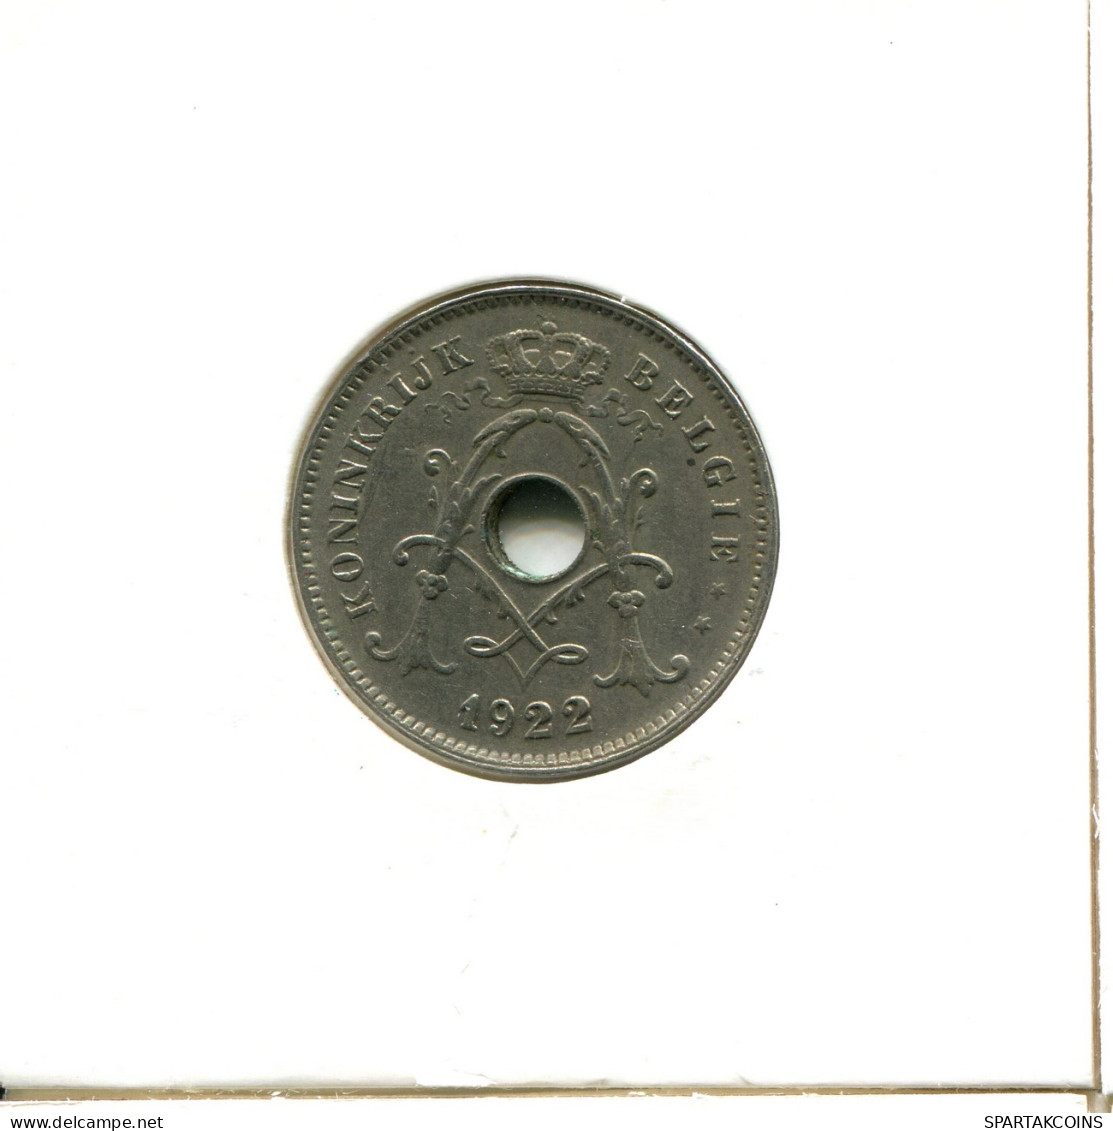 10 CENTIMES 1922 BÉLGICA BELGIUM Moneda DUTCH Text #AX400.E - 10 Centimes